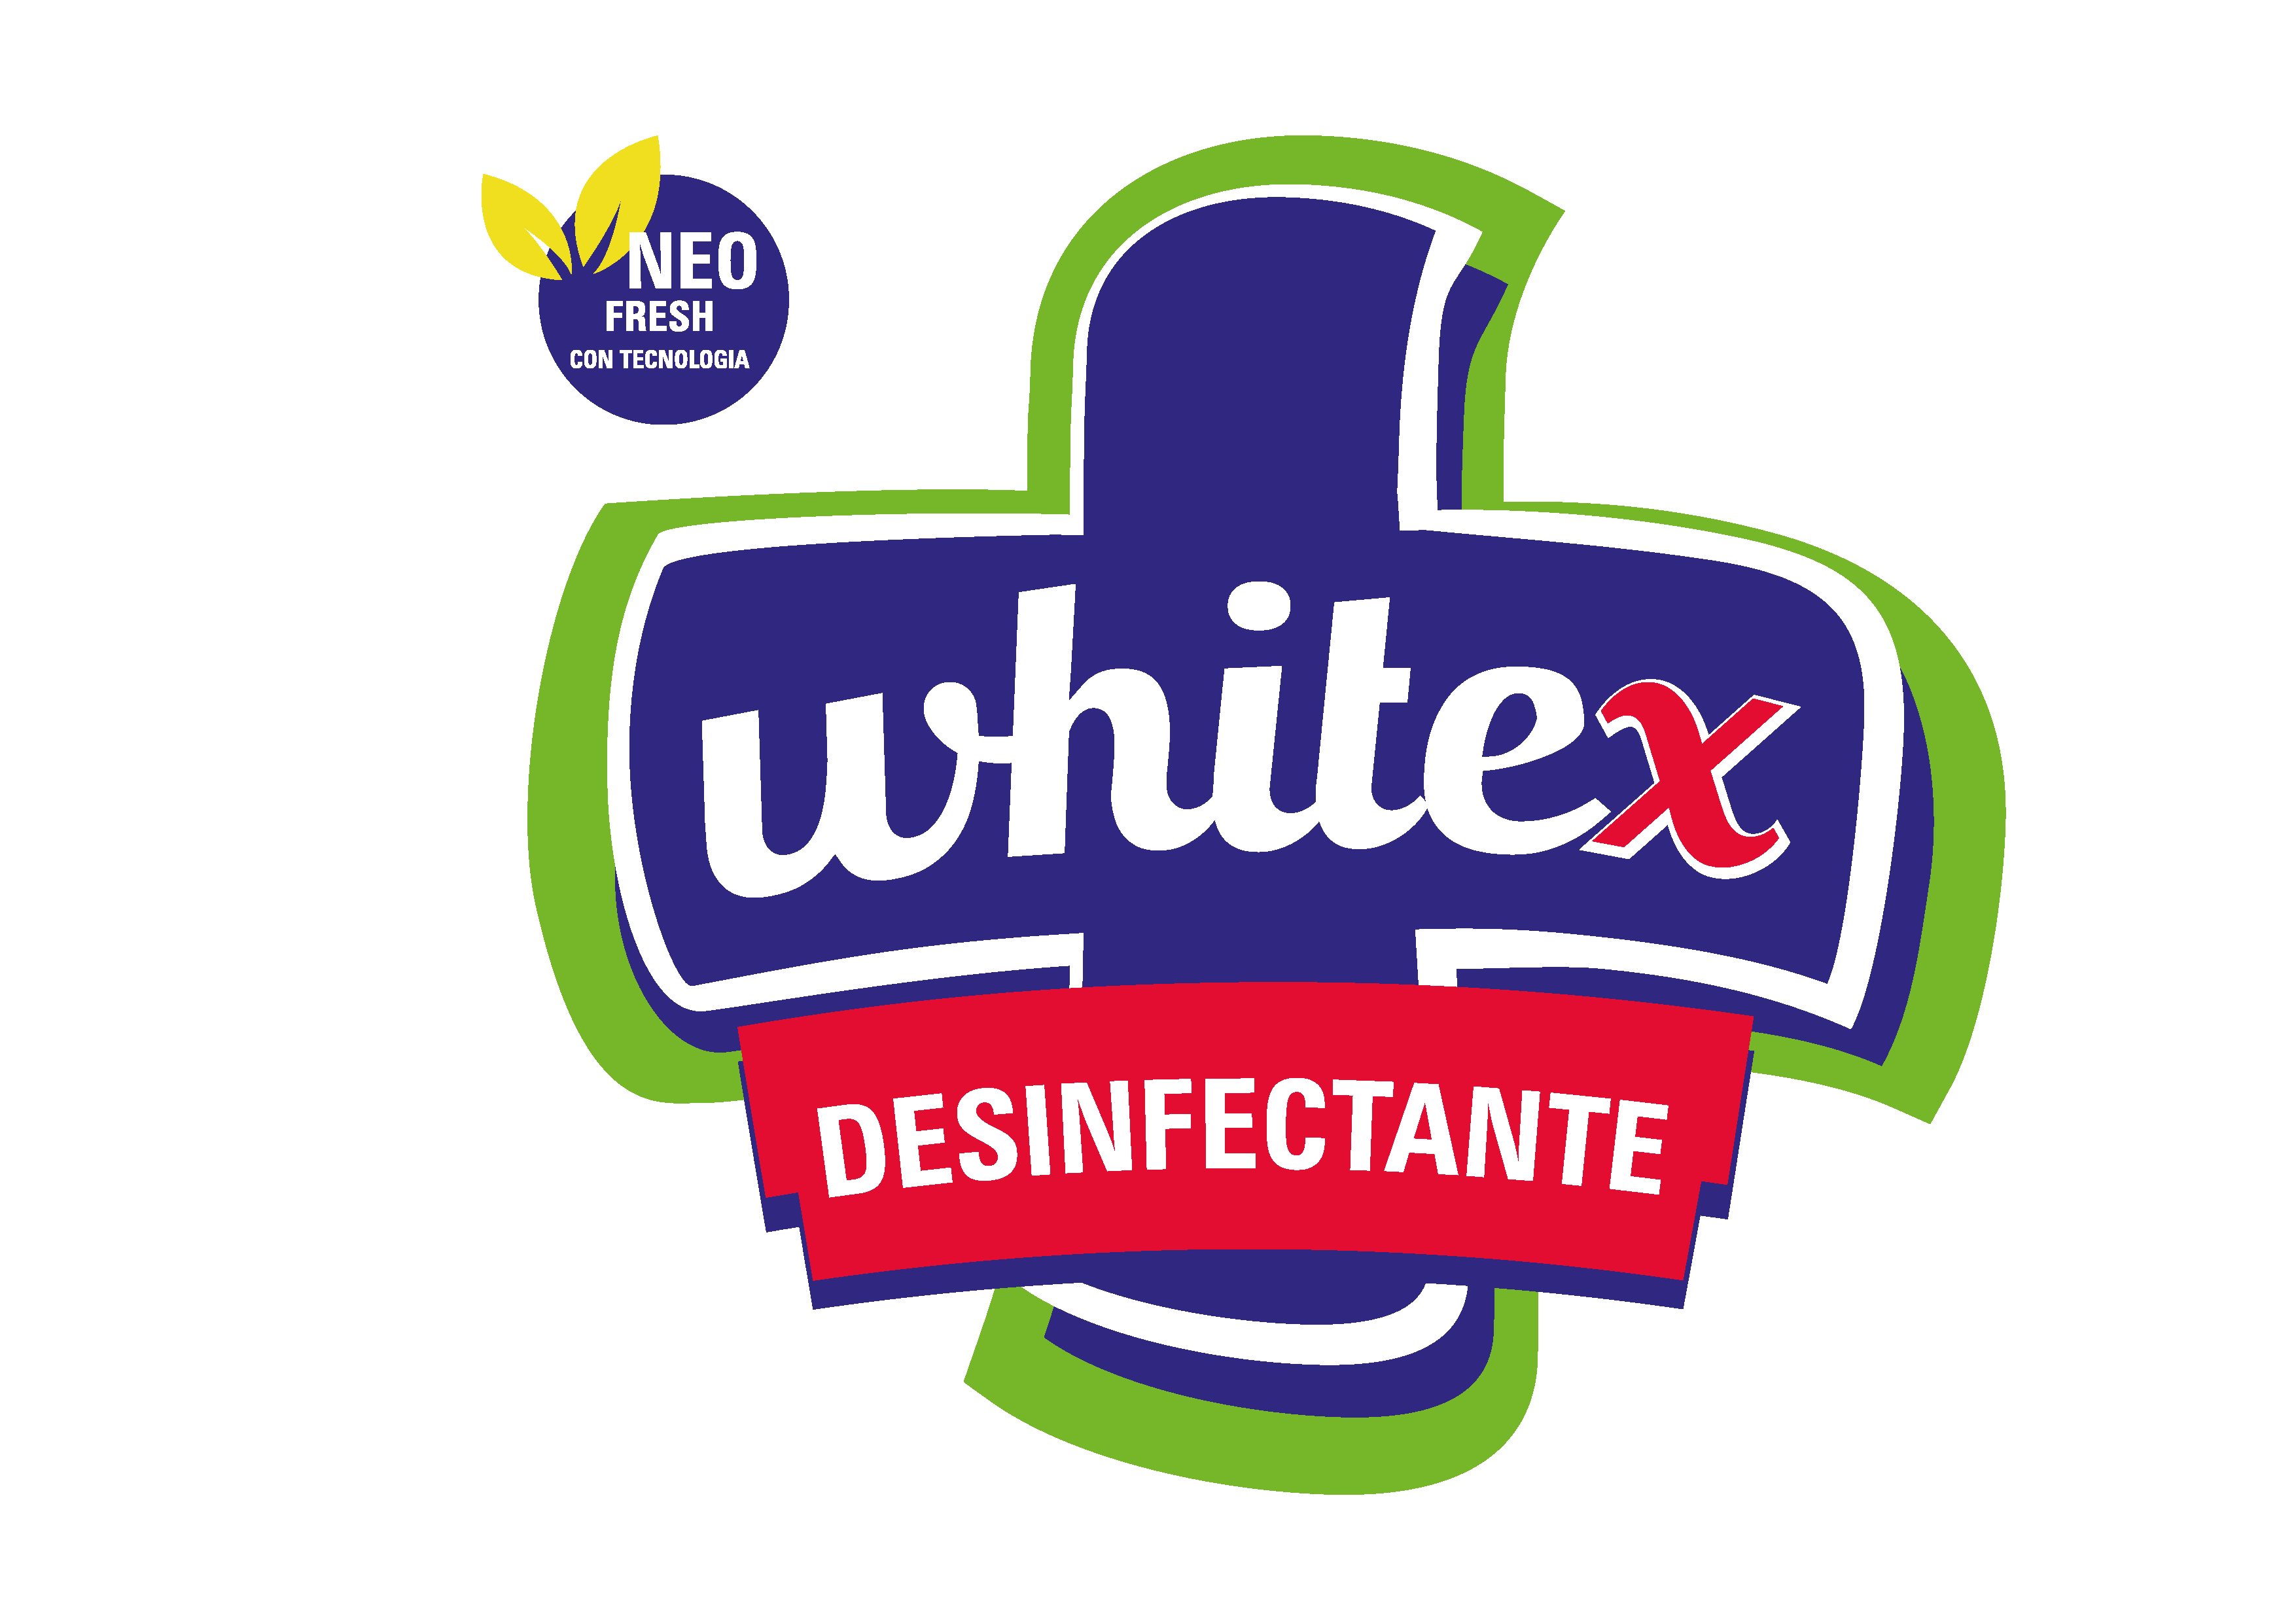 WHITEX